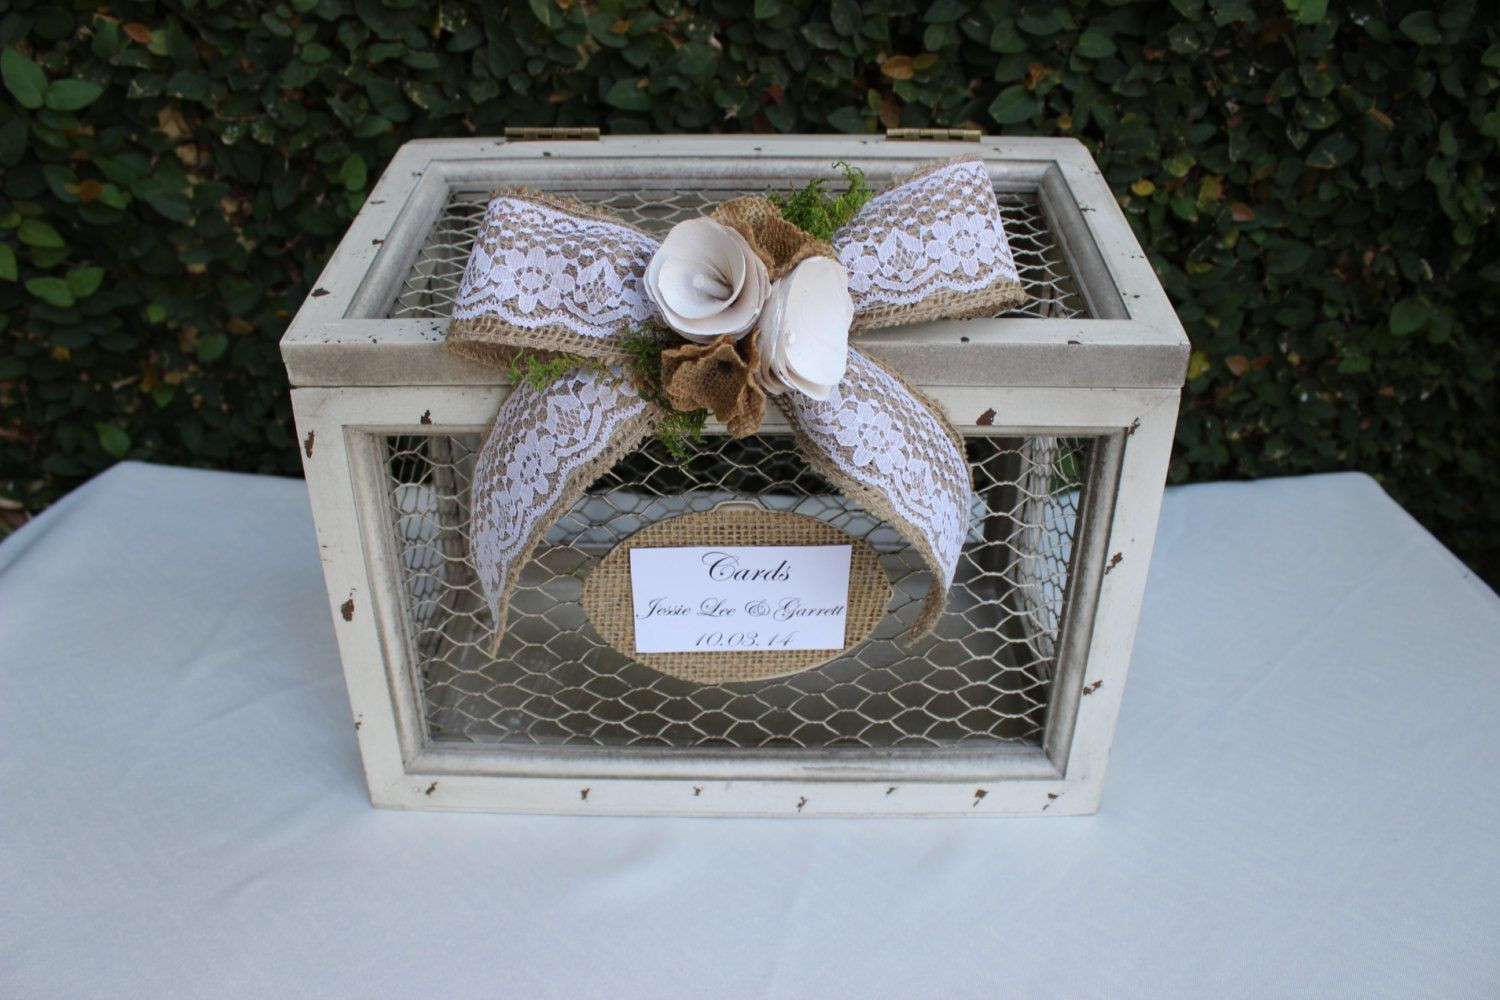 DIY Rustic Wedding Card Box
 diy wedding card box chicken wire and wood Google Search